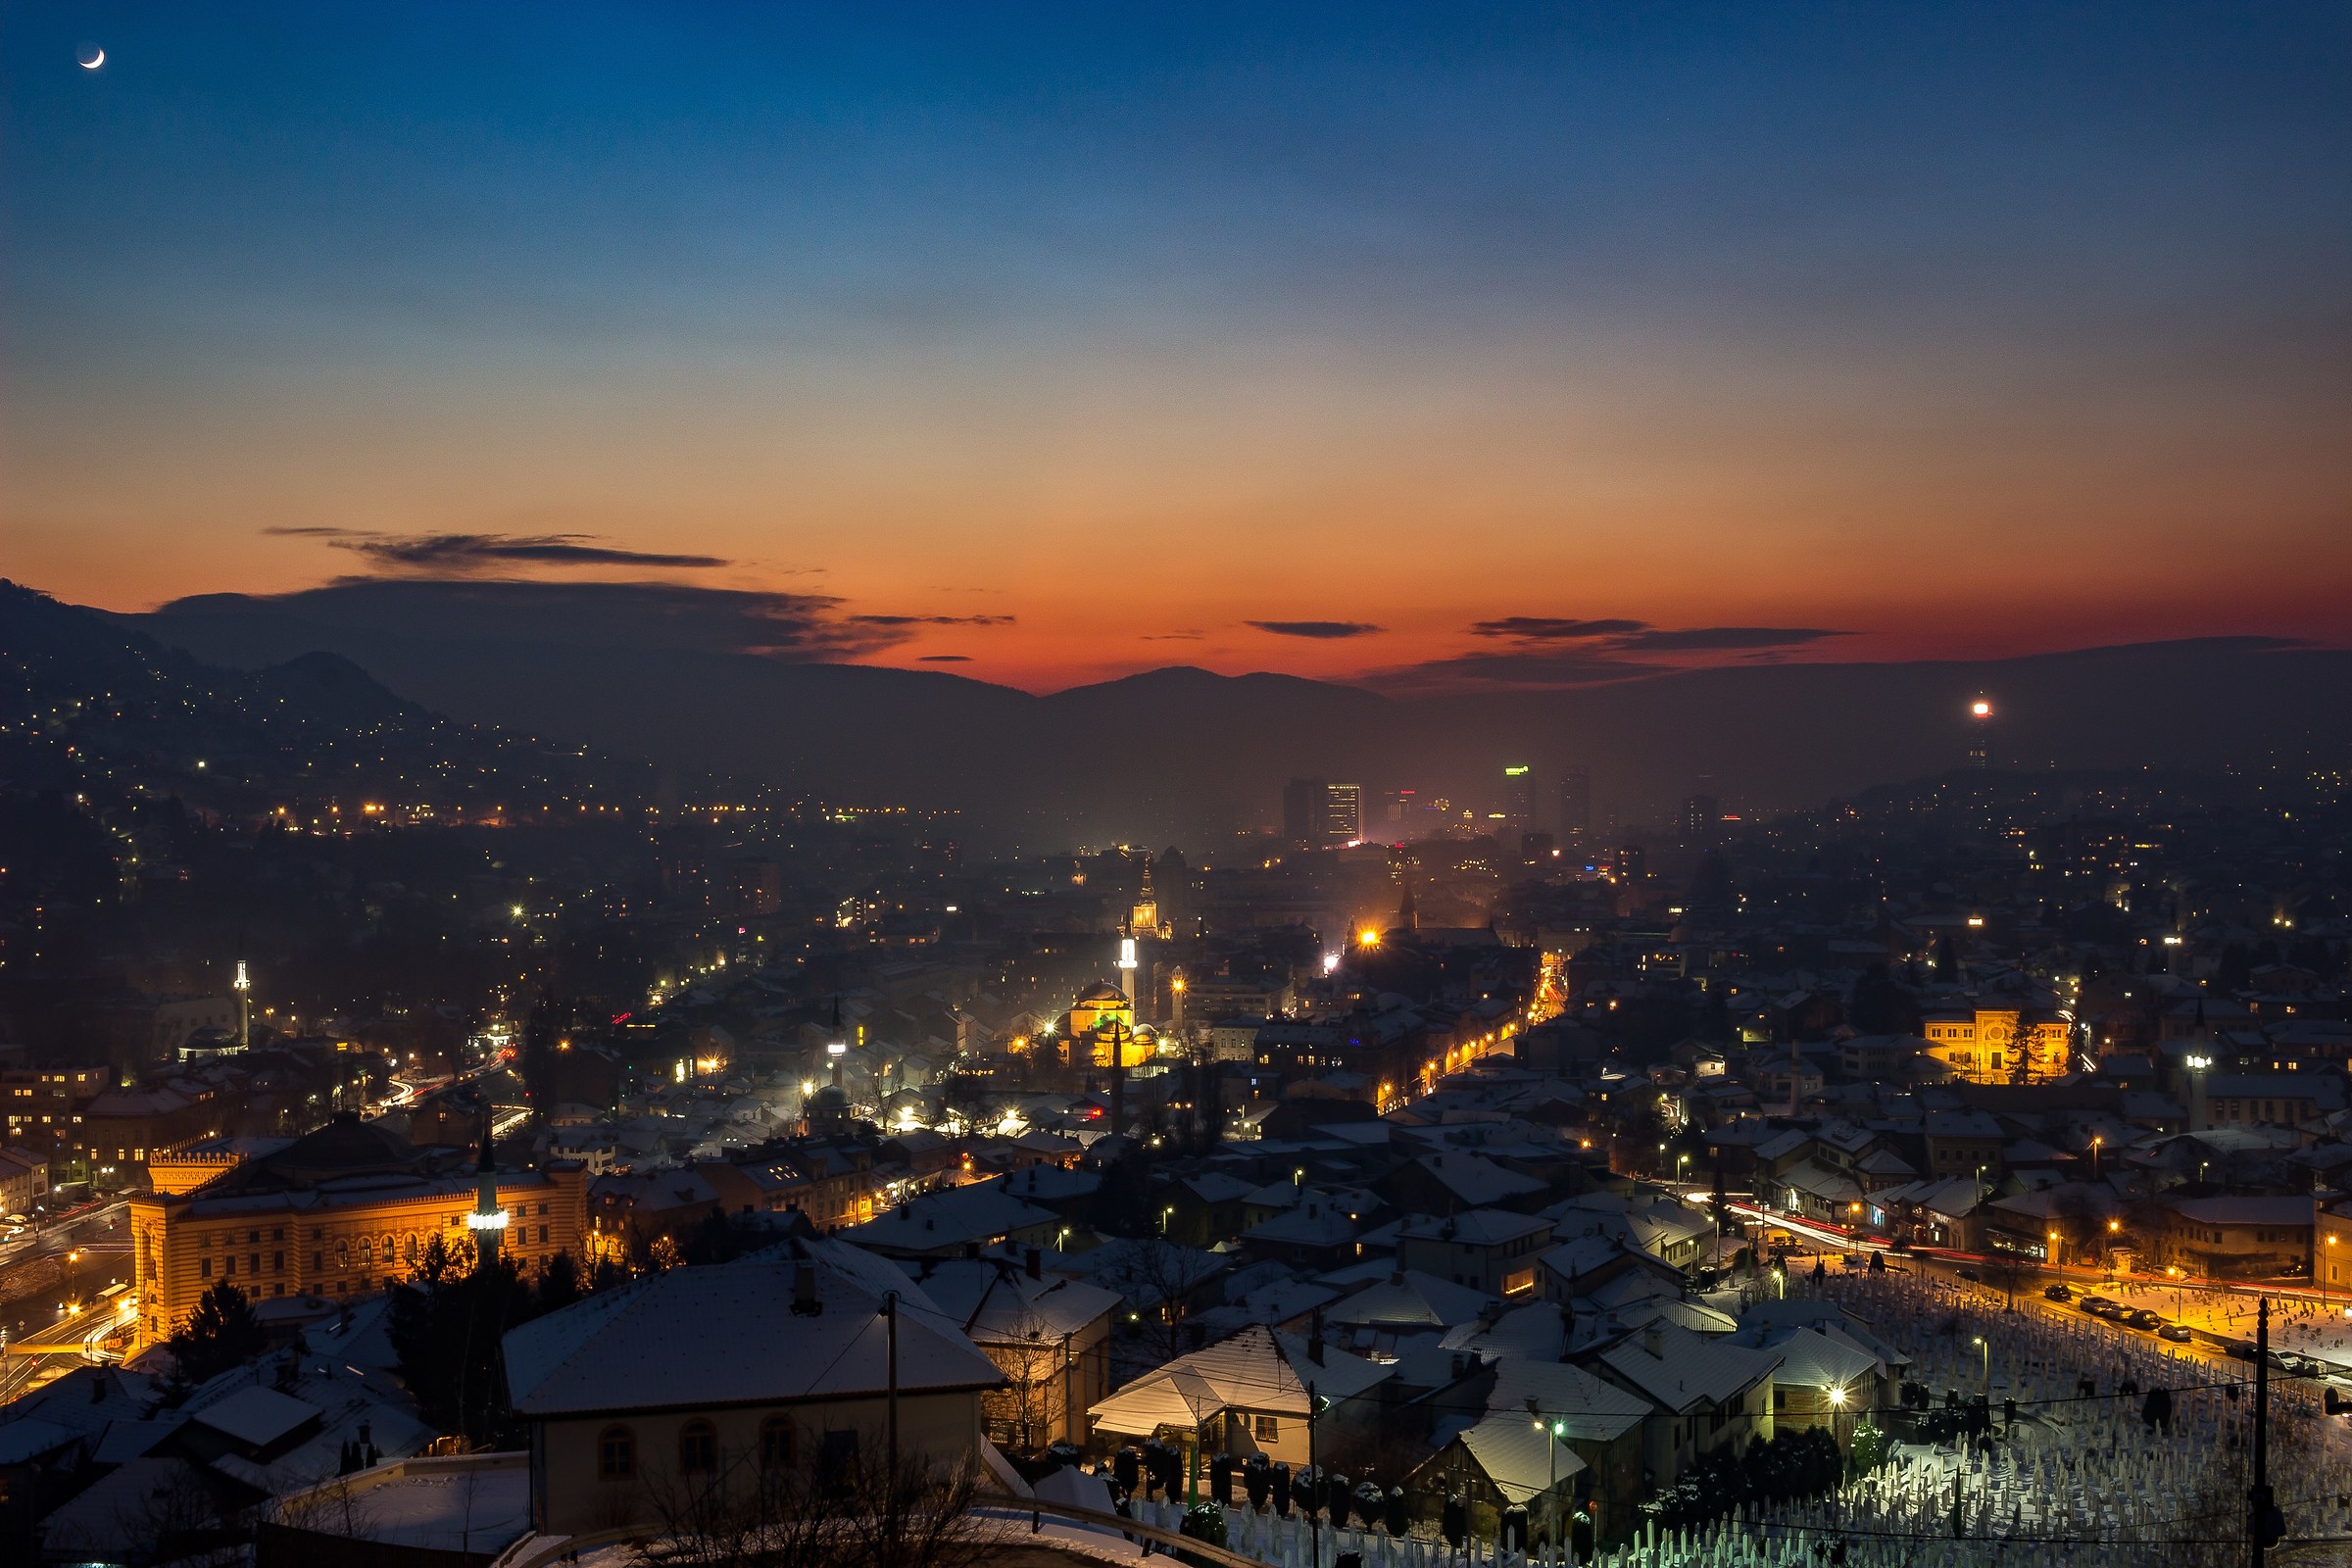 Last sunset of 2016 in Sarajevo...